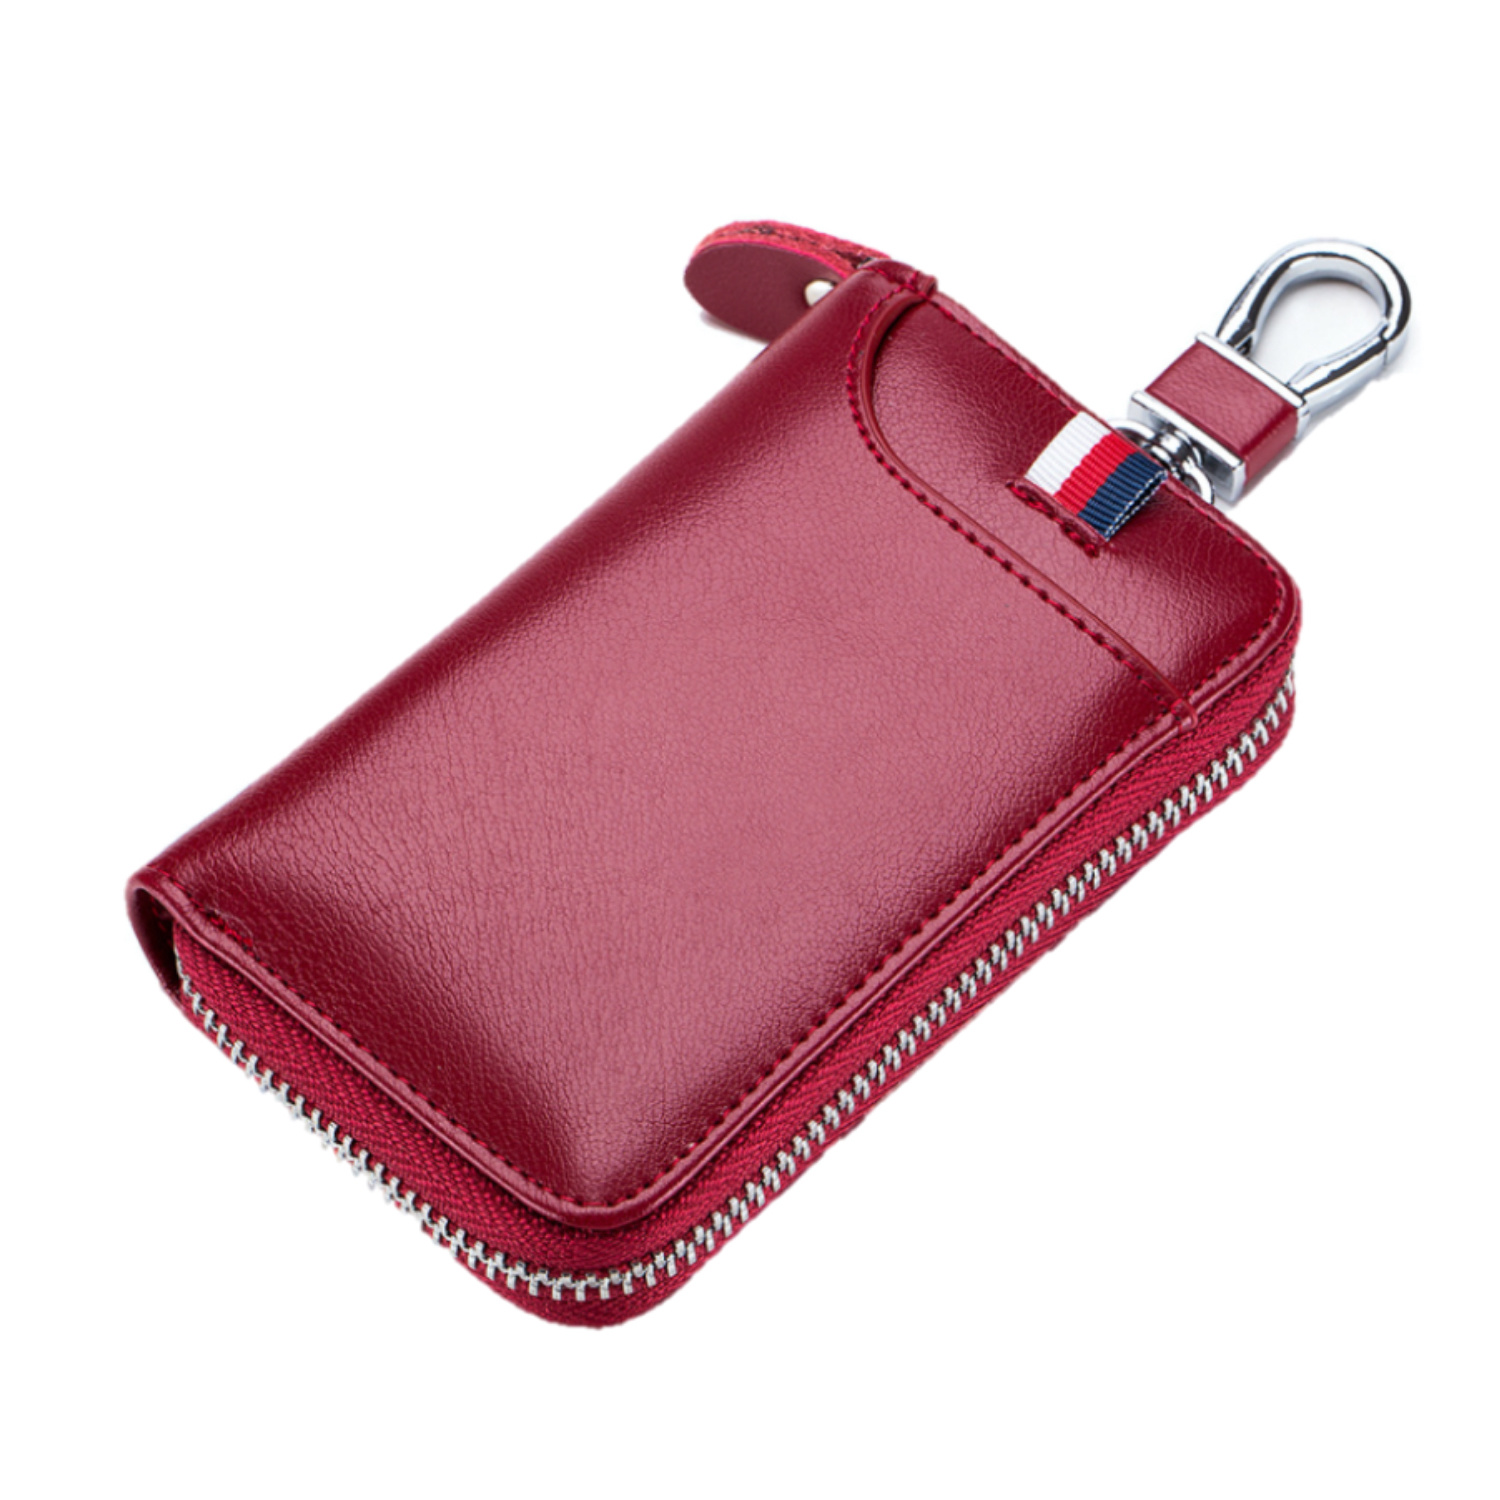 Leder-Schlüsseletui, 6 Schlüsselhaken, Kartenhalter, Geldschein-Brieftasche, Autoschlüsseltasche, Multifunktions-Schlüssel-Organizer - Rot-2